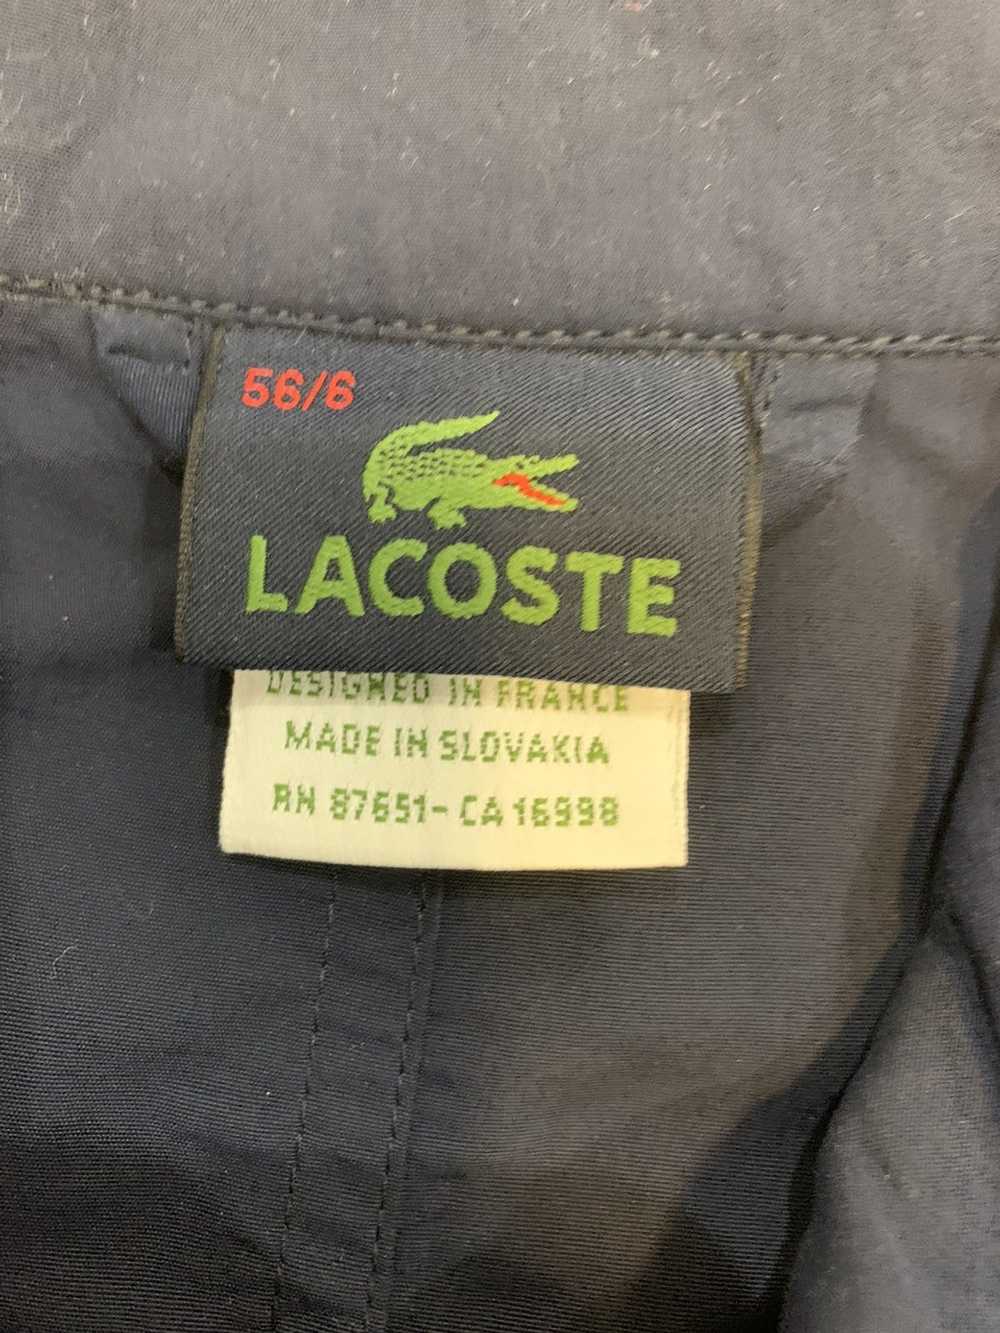 Lacoste Lacoste jacket - image 4